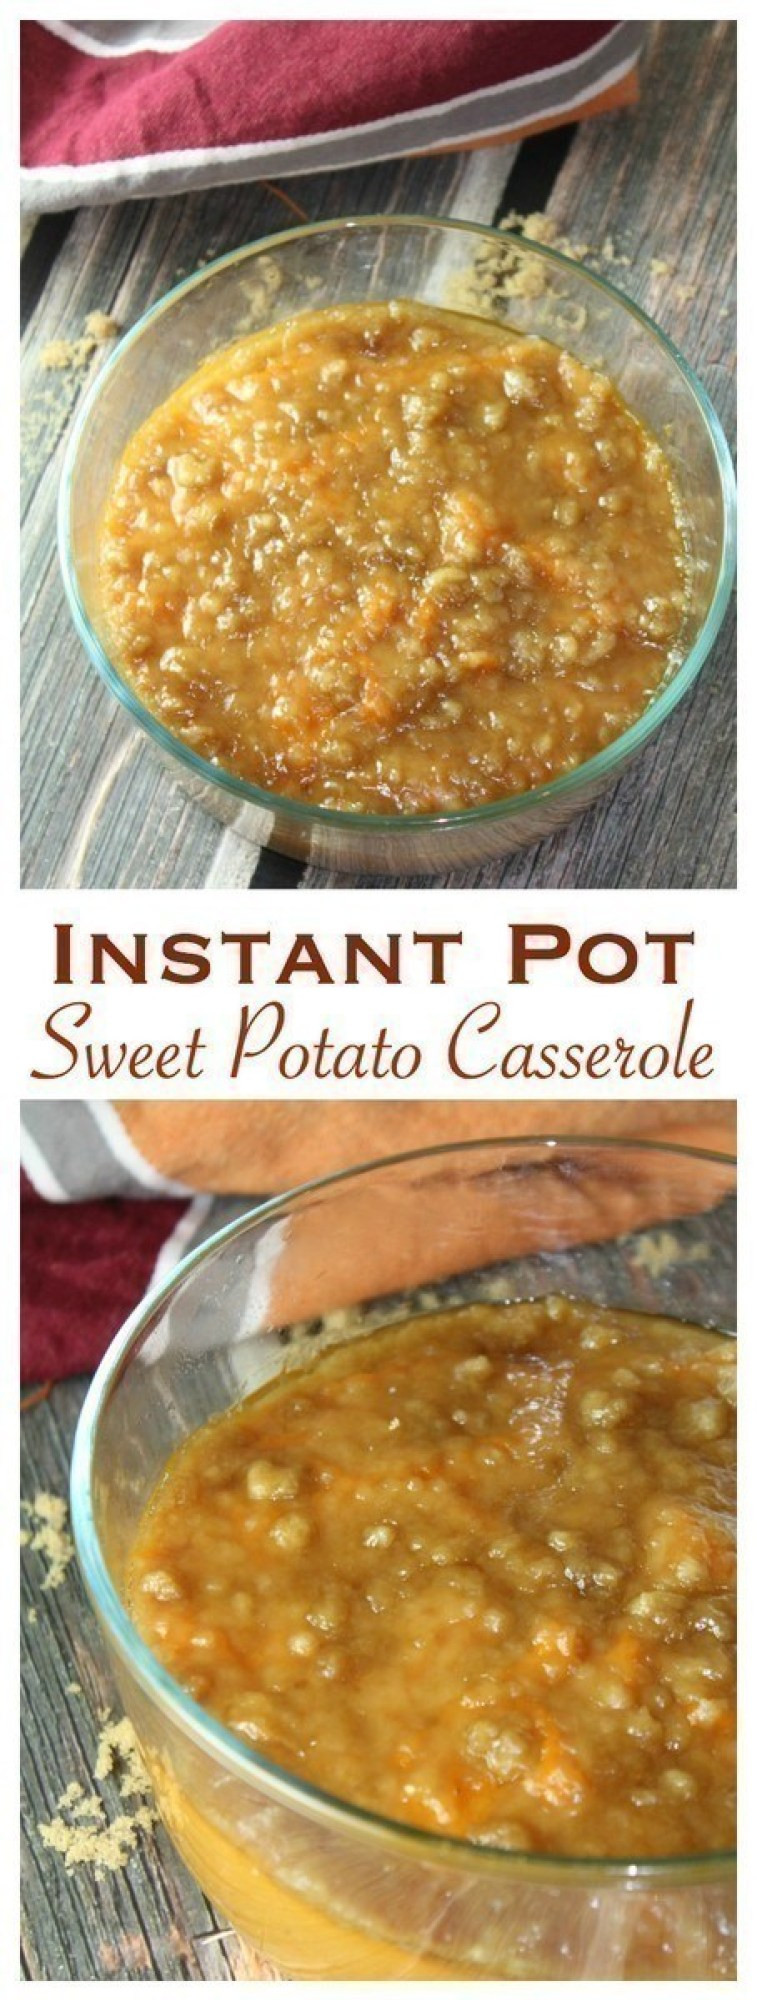 Instant Pot Sweet Potato Casserole
 Instant Pot Sweet Potato Casserole